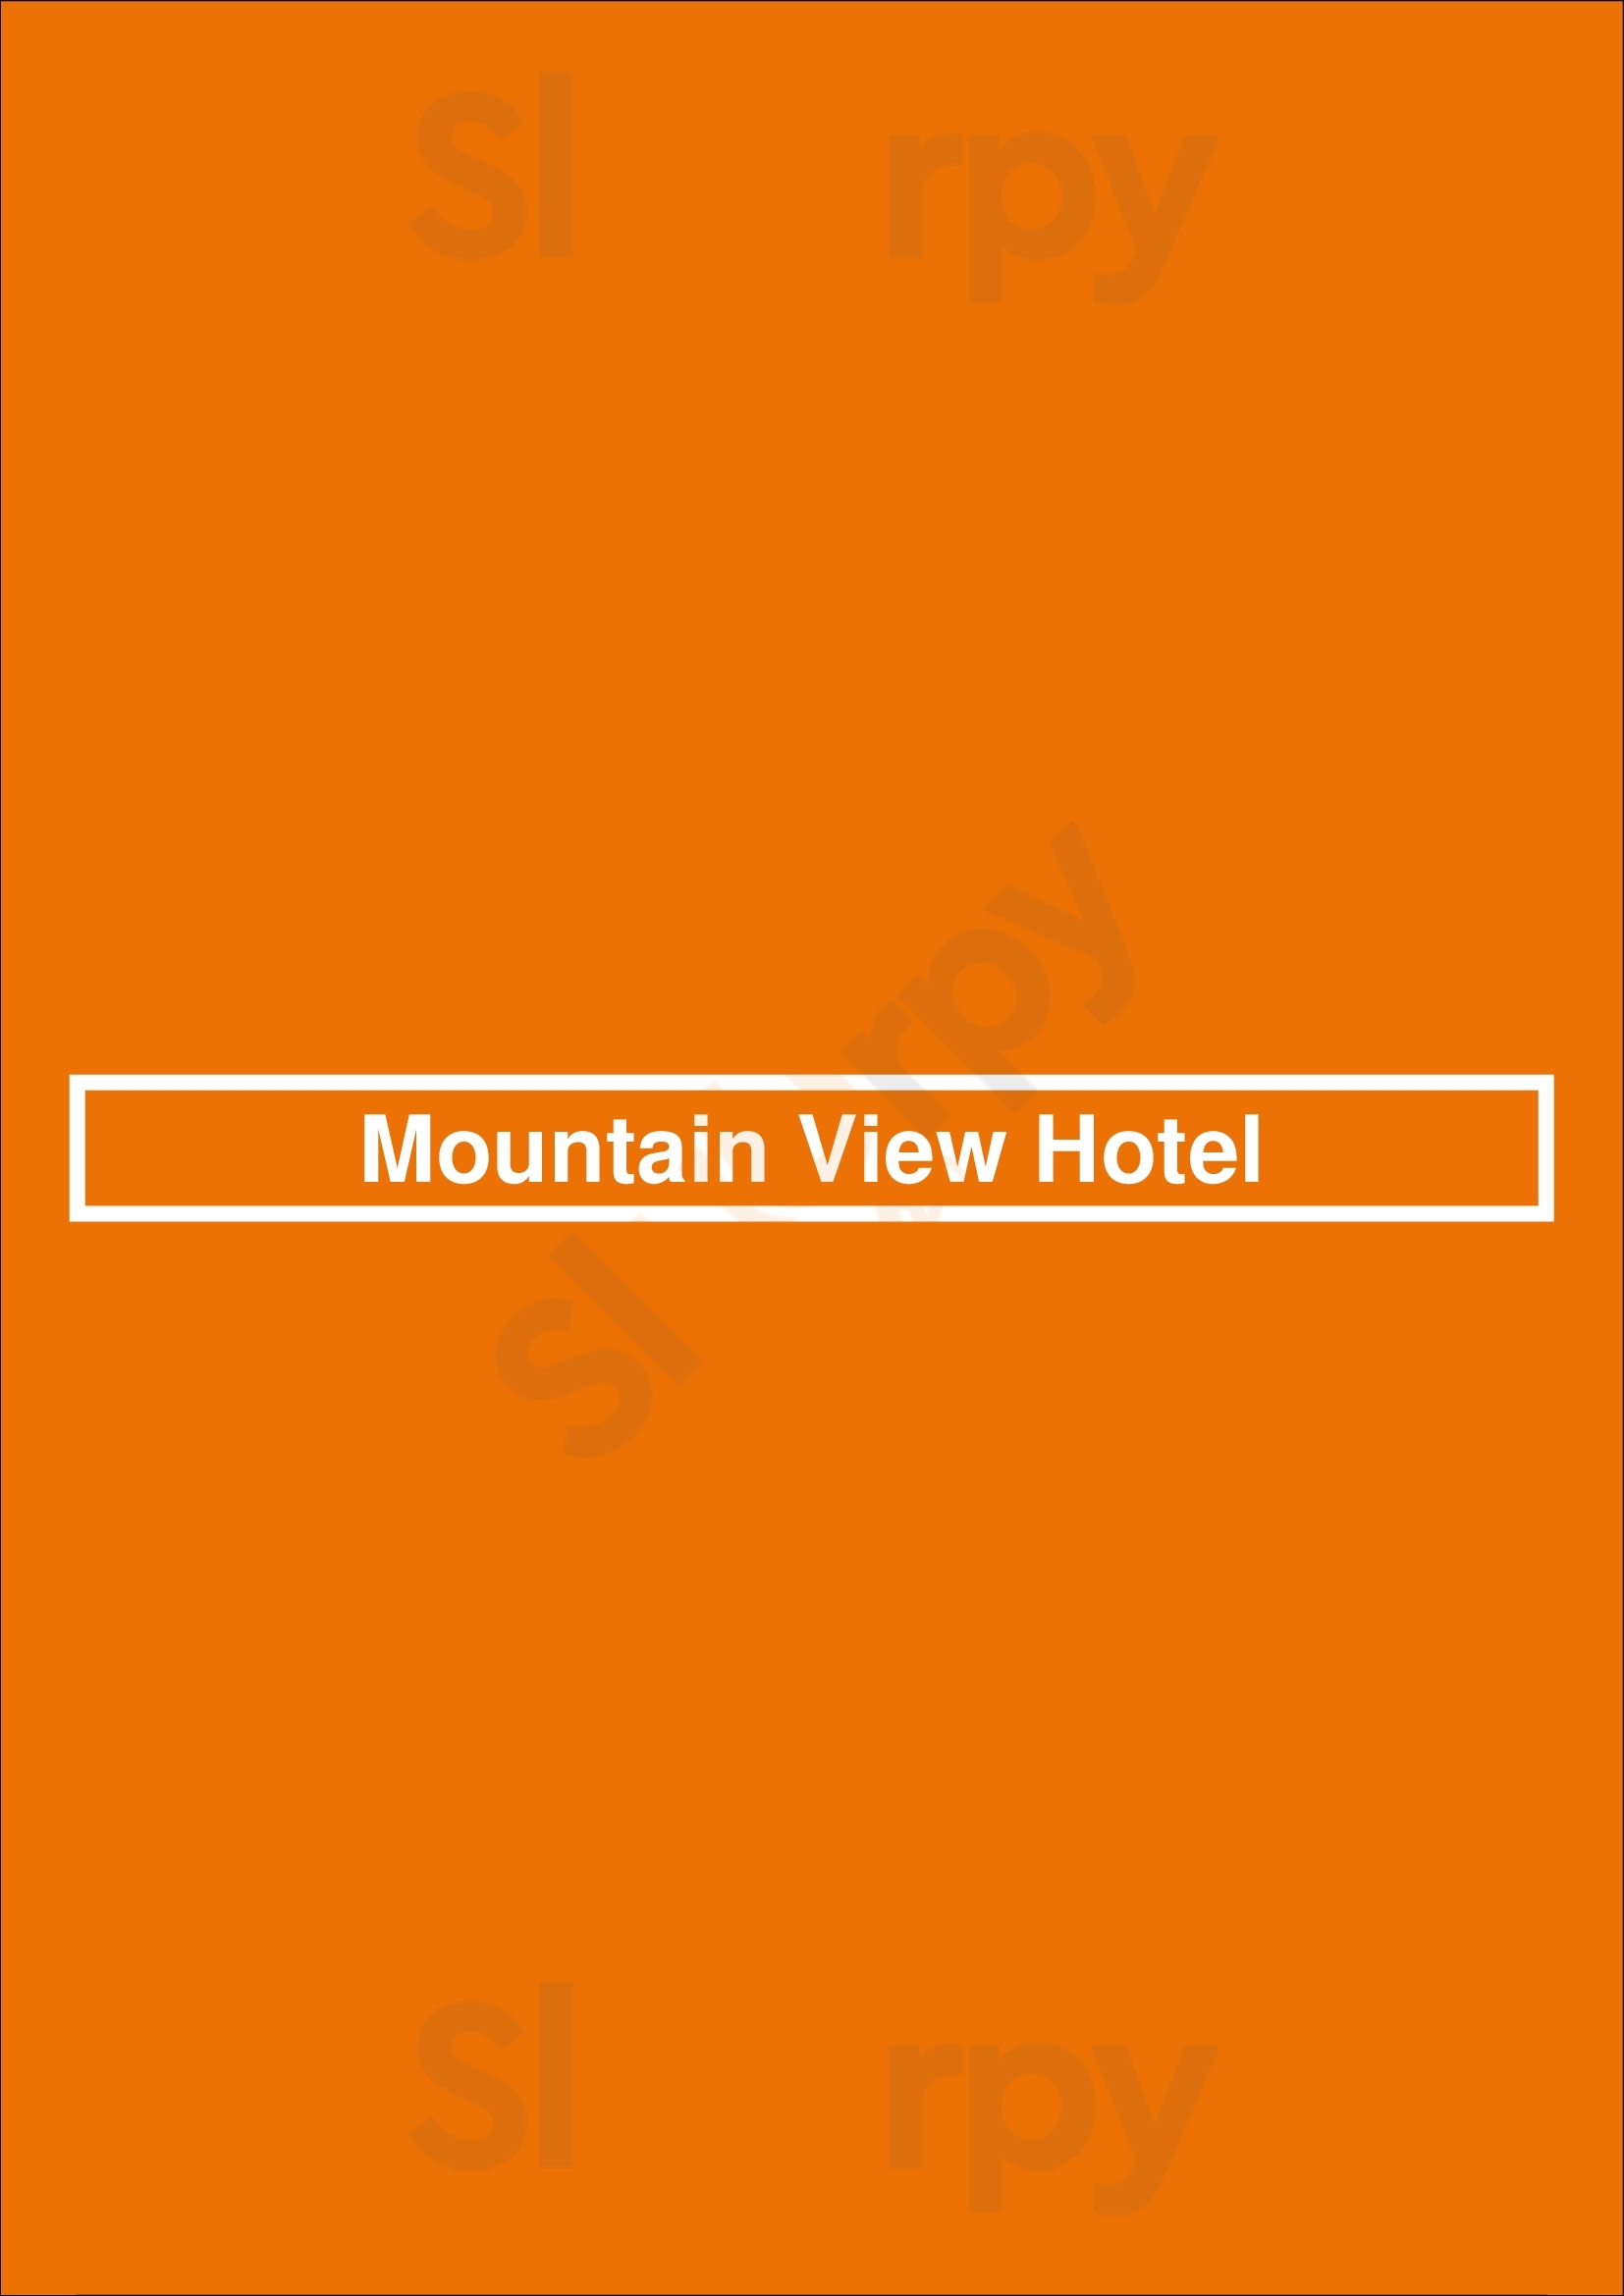 Mountain View Hotel Glen Waverley Menu - 1